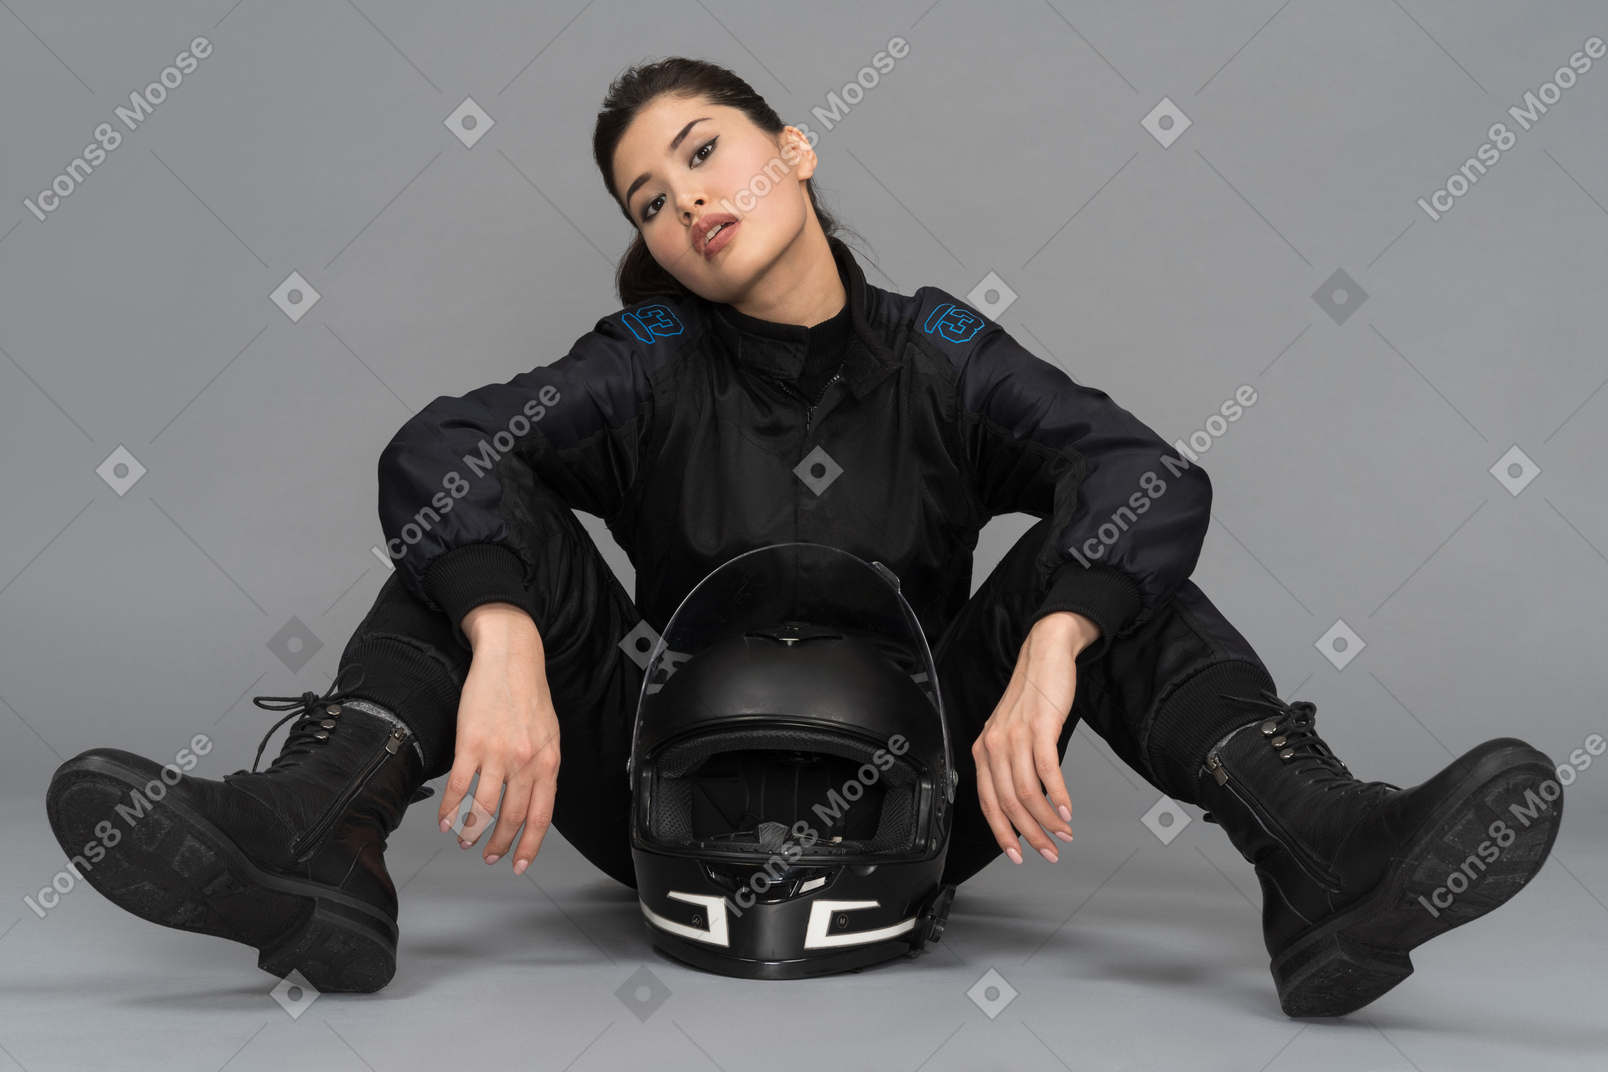 Uma jovem confiante, sentada com um capacete entre as pernas